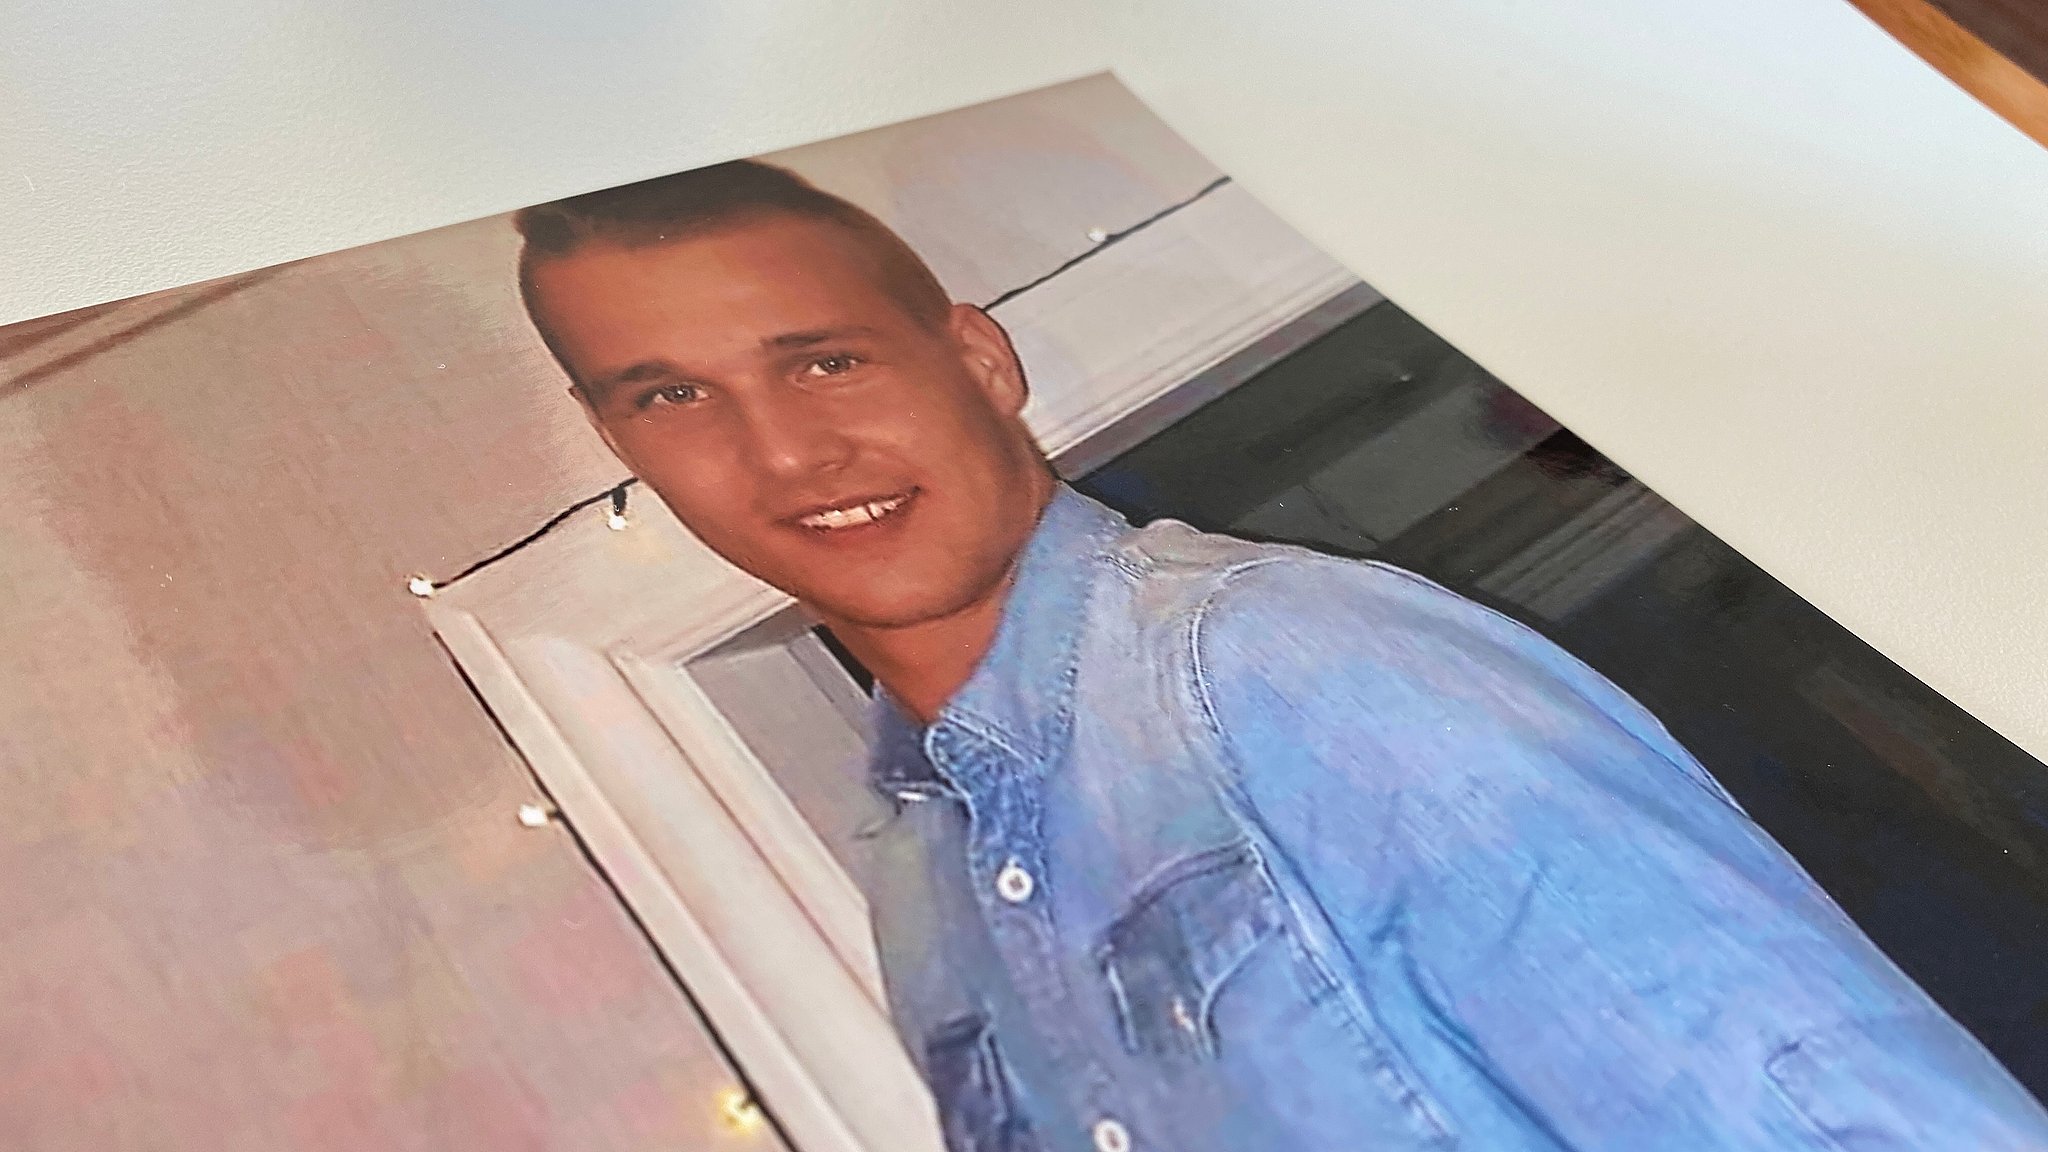 Emil døde af en overdosis: Syv måneder blev det ulovligt | TV2 Østjylland